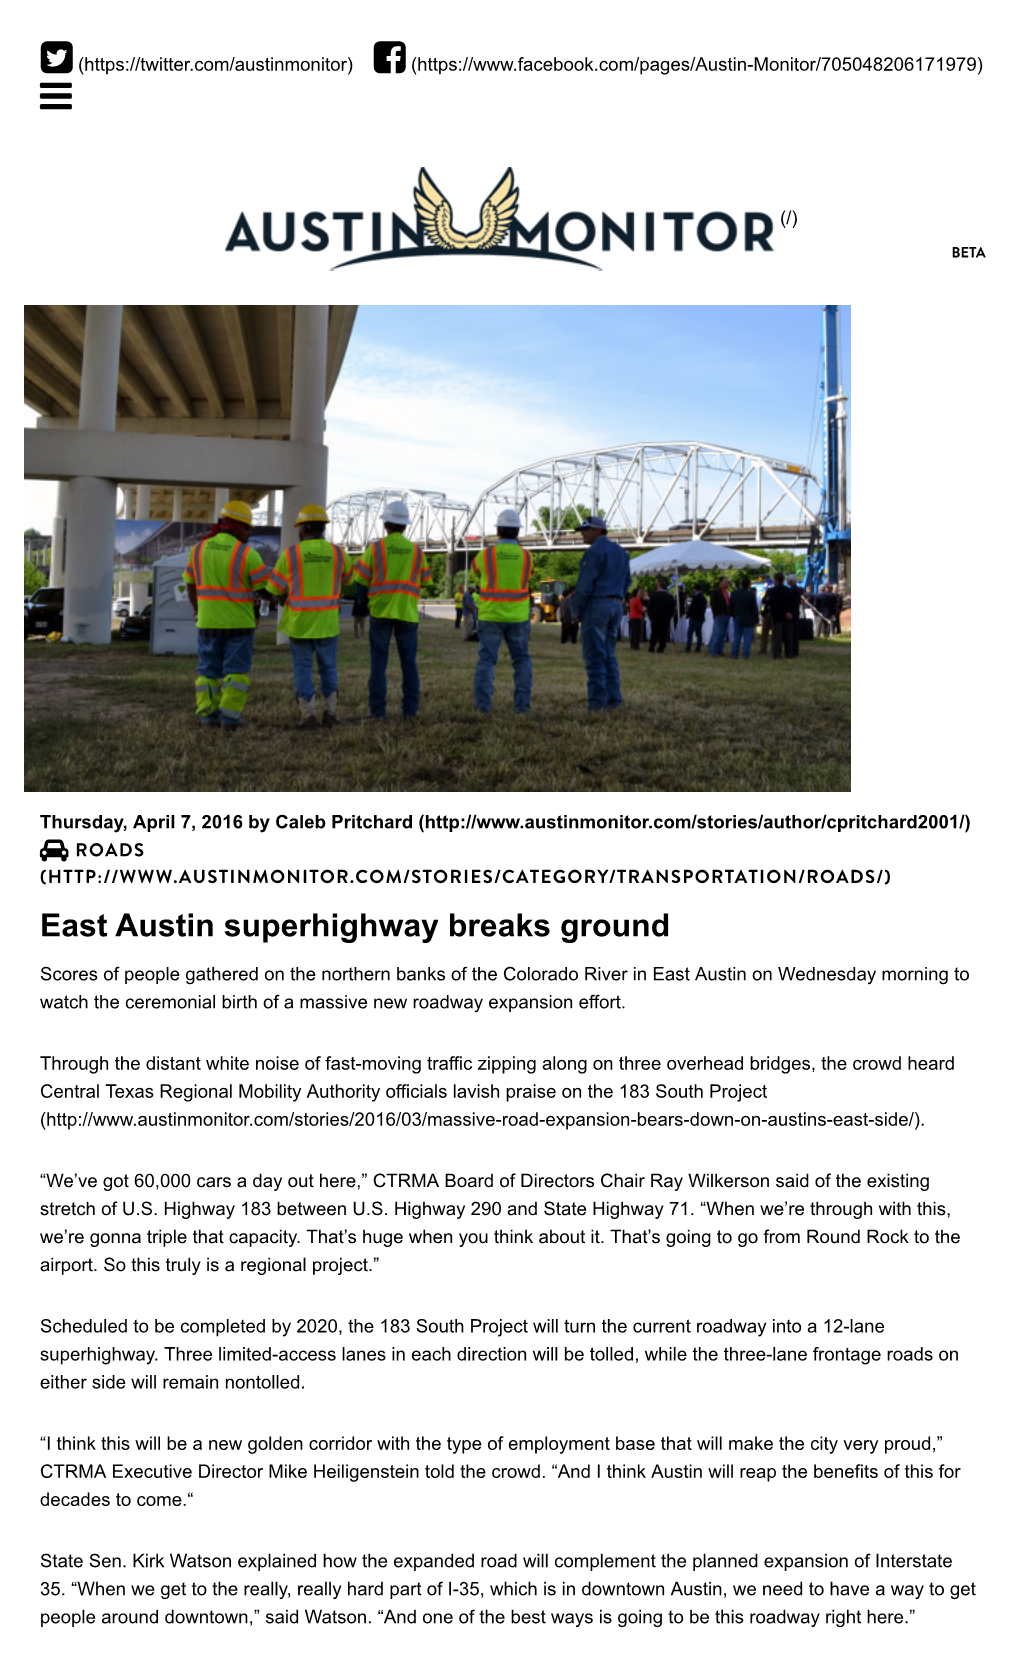 East Austin Superhighway Breaks Ground